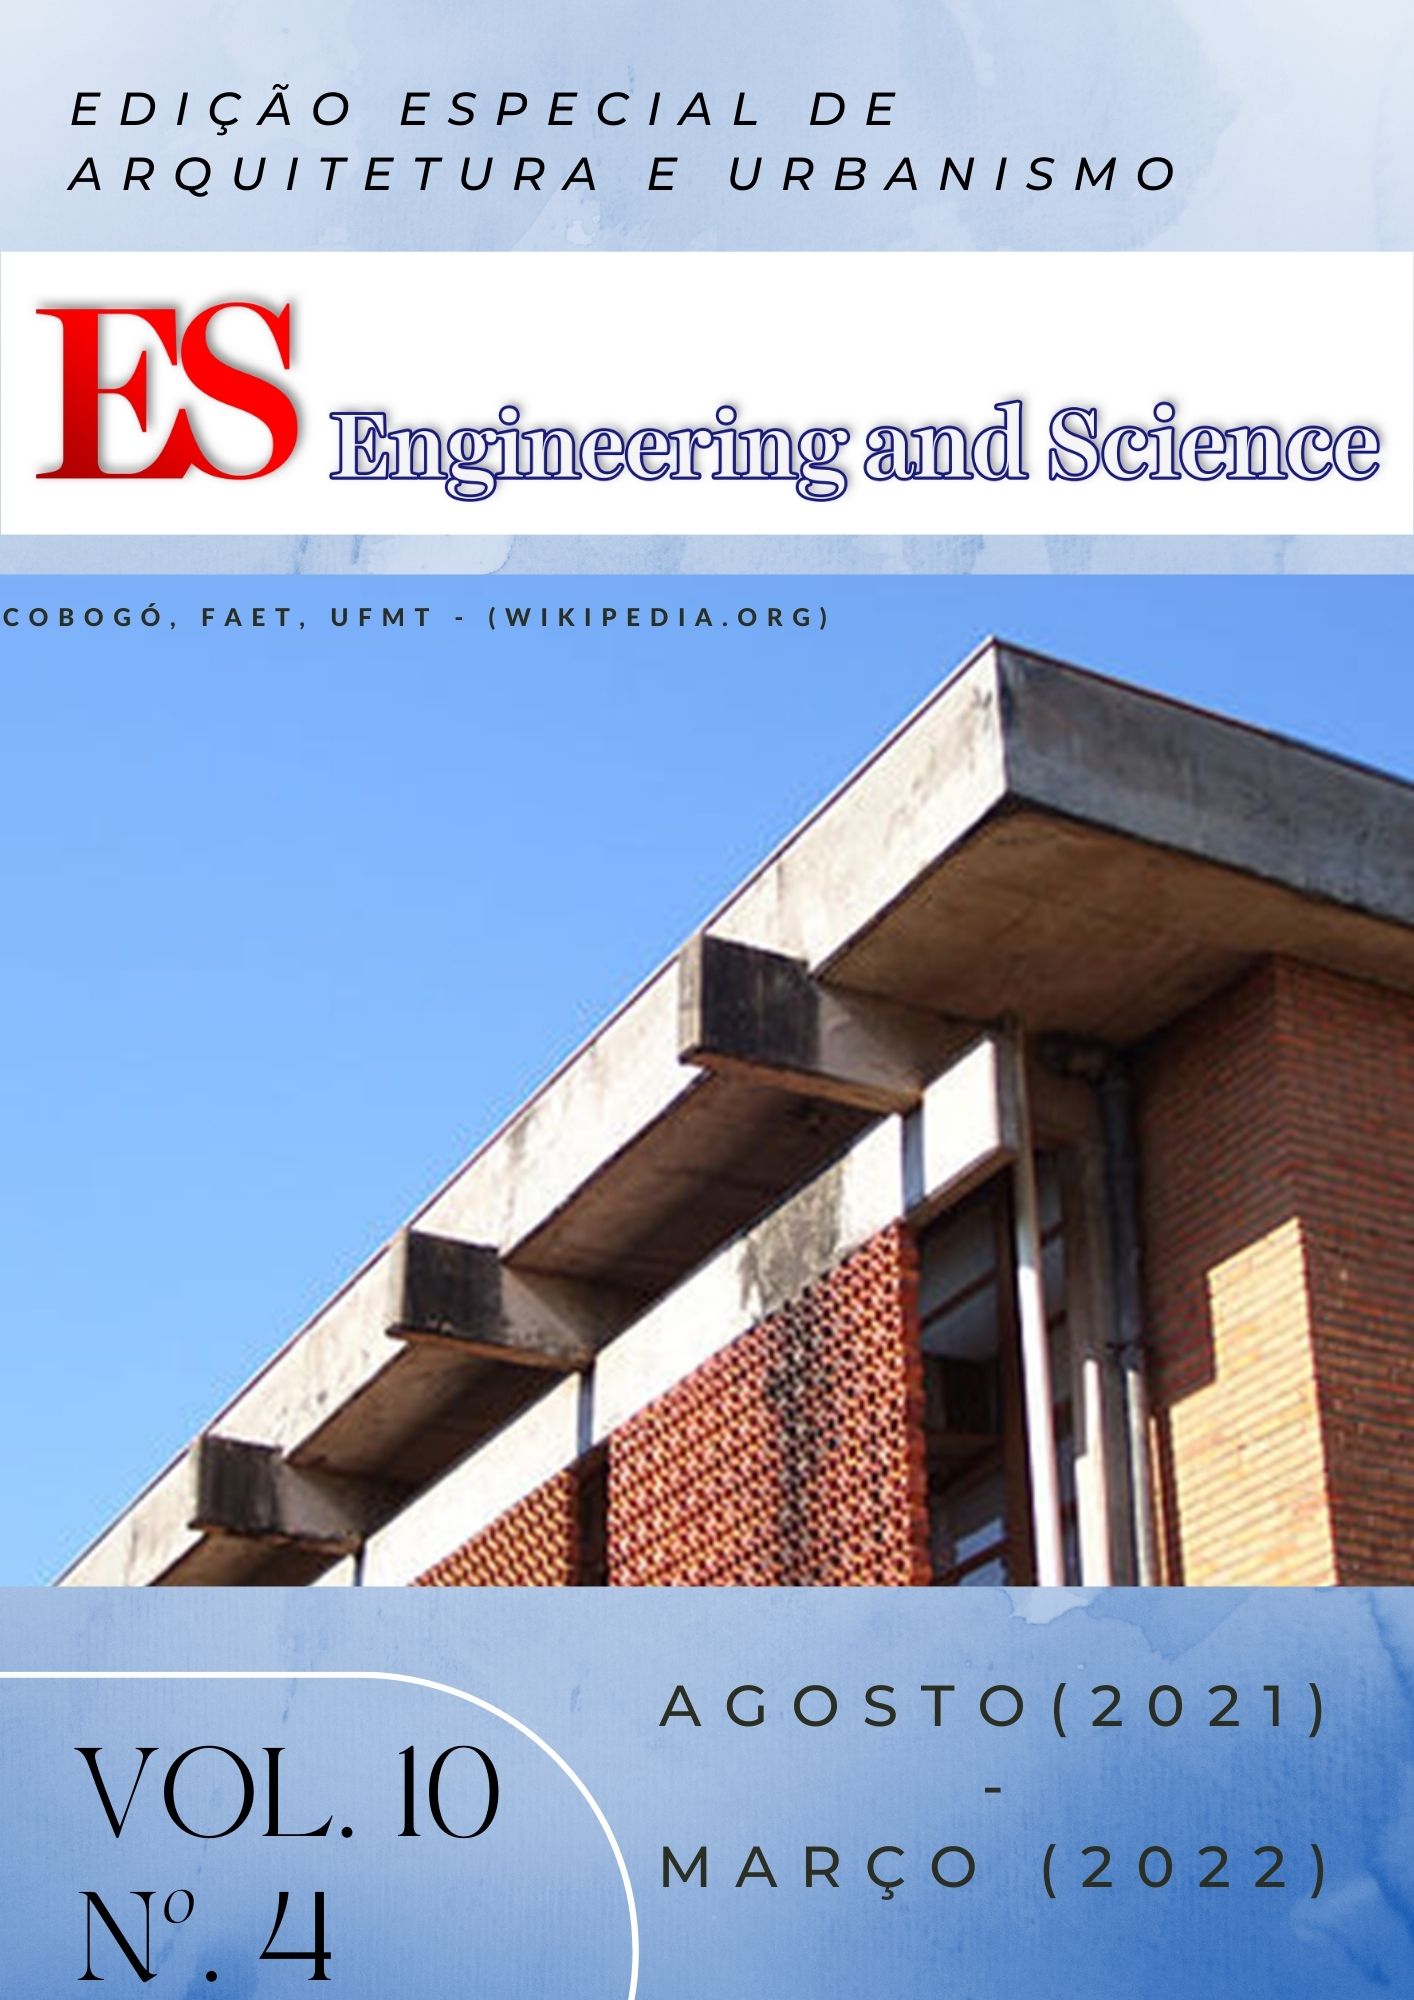 					Visualizar v. 10 n. 4 (2022): E&S Engineering and Science| Agosto - Março (2022) | Edição Especial de Arquitetura e Urbanismo
				